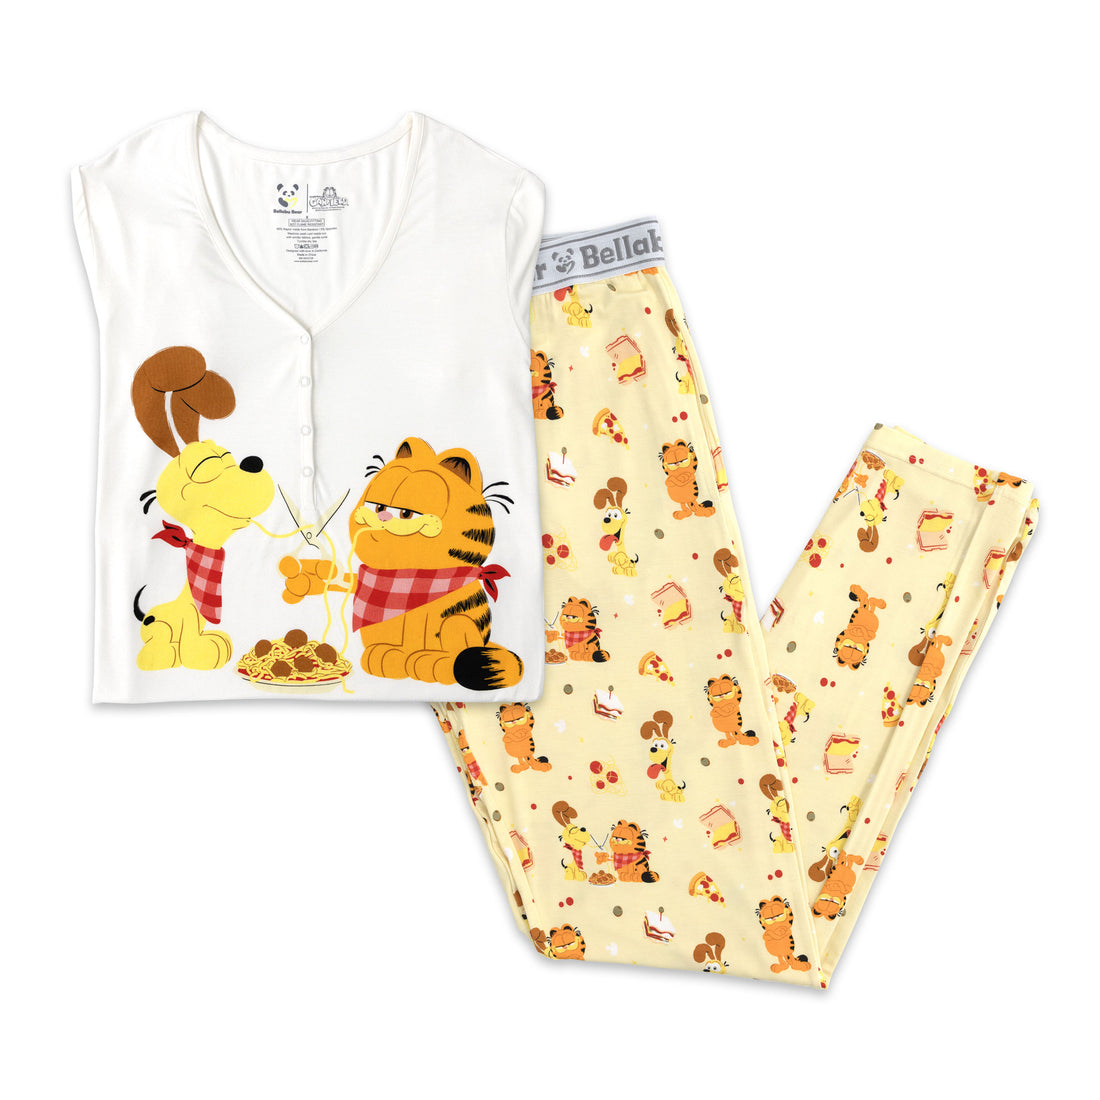 Garfield: The Movie Bamboo Women's Pajama Set